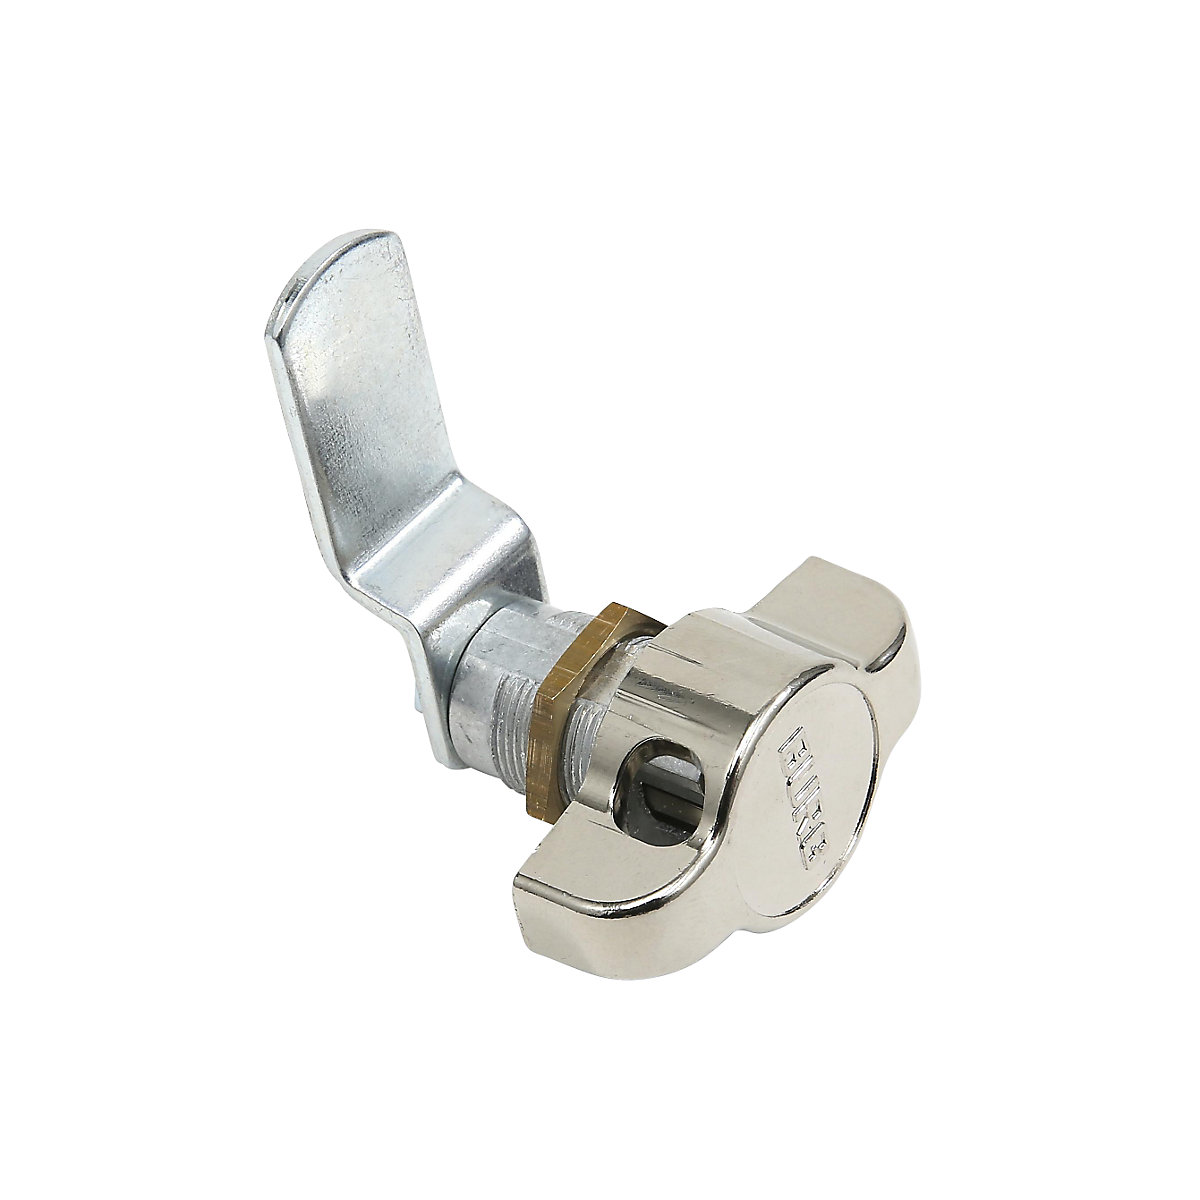 Rotary bolt lock for locker